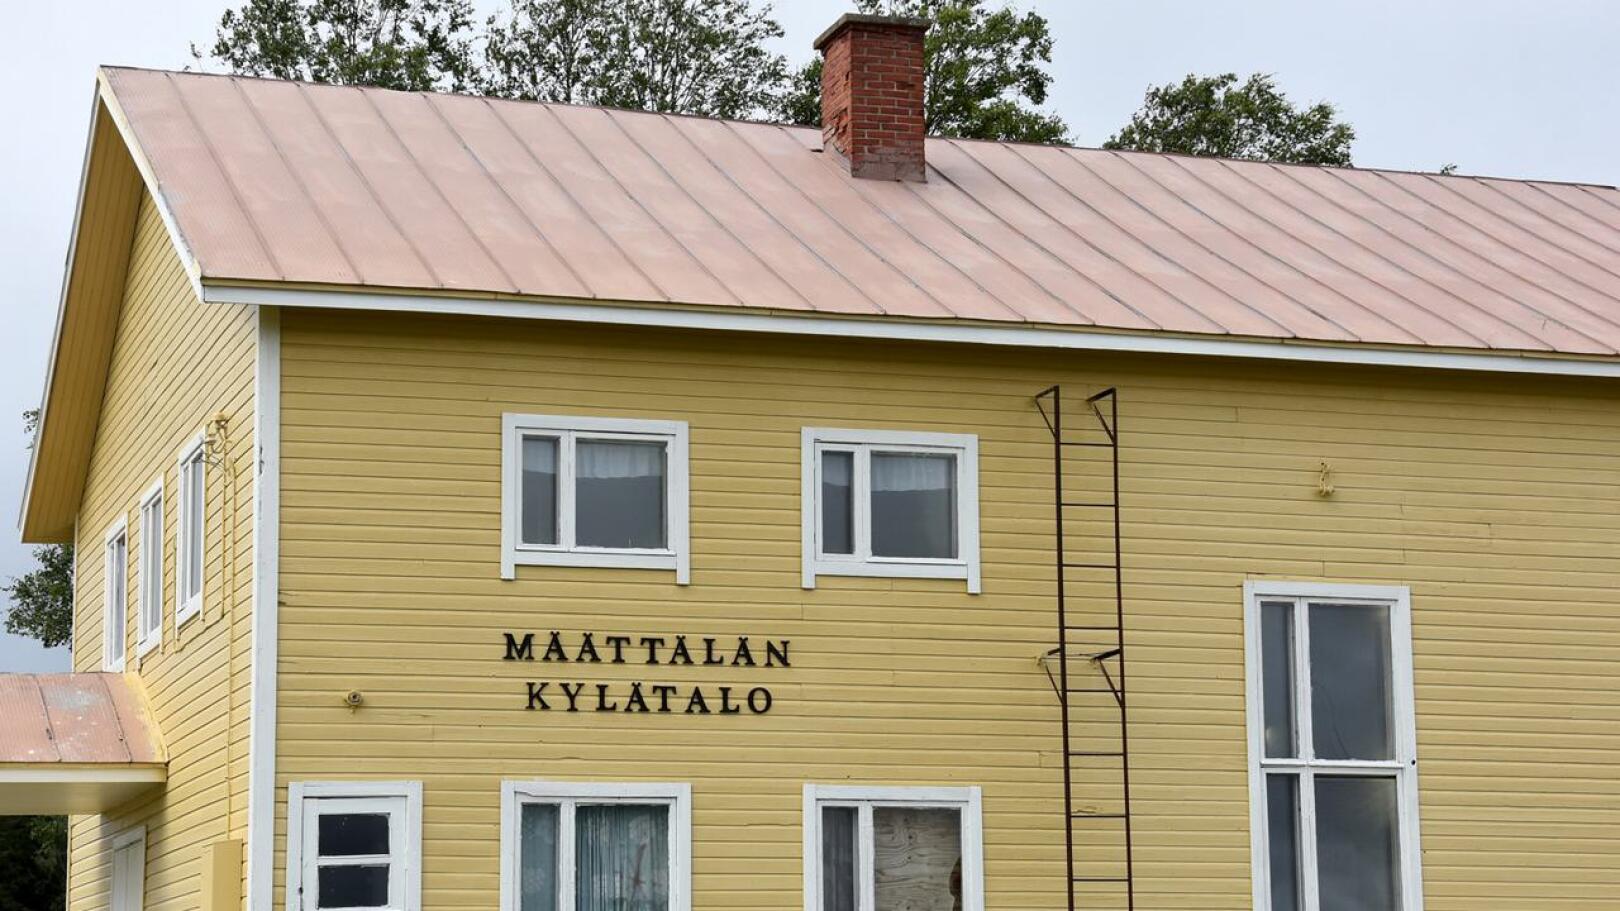 Määttälän kylätalon ulkokuorta on kohennettu talkoilla.